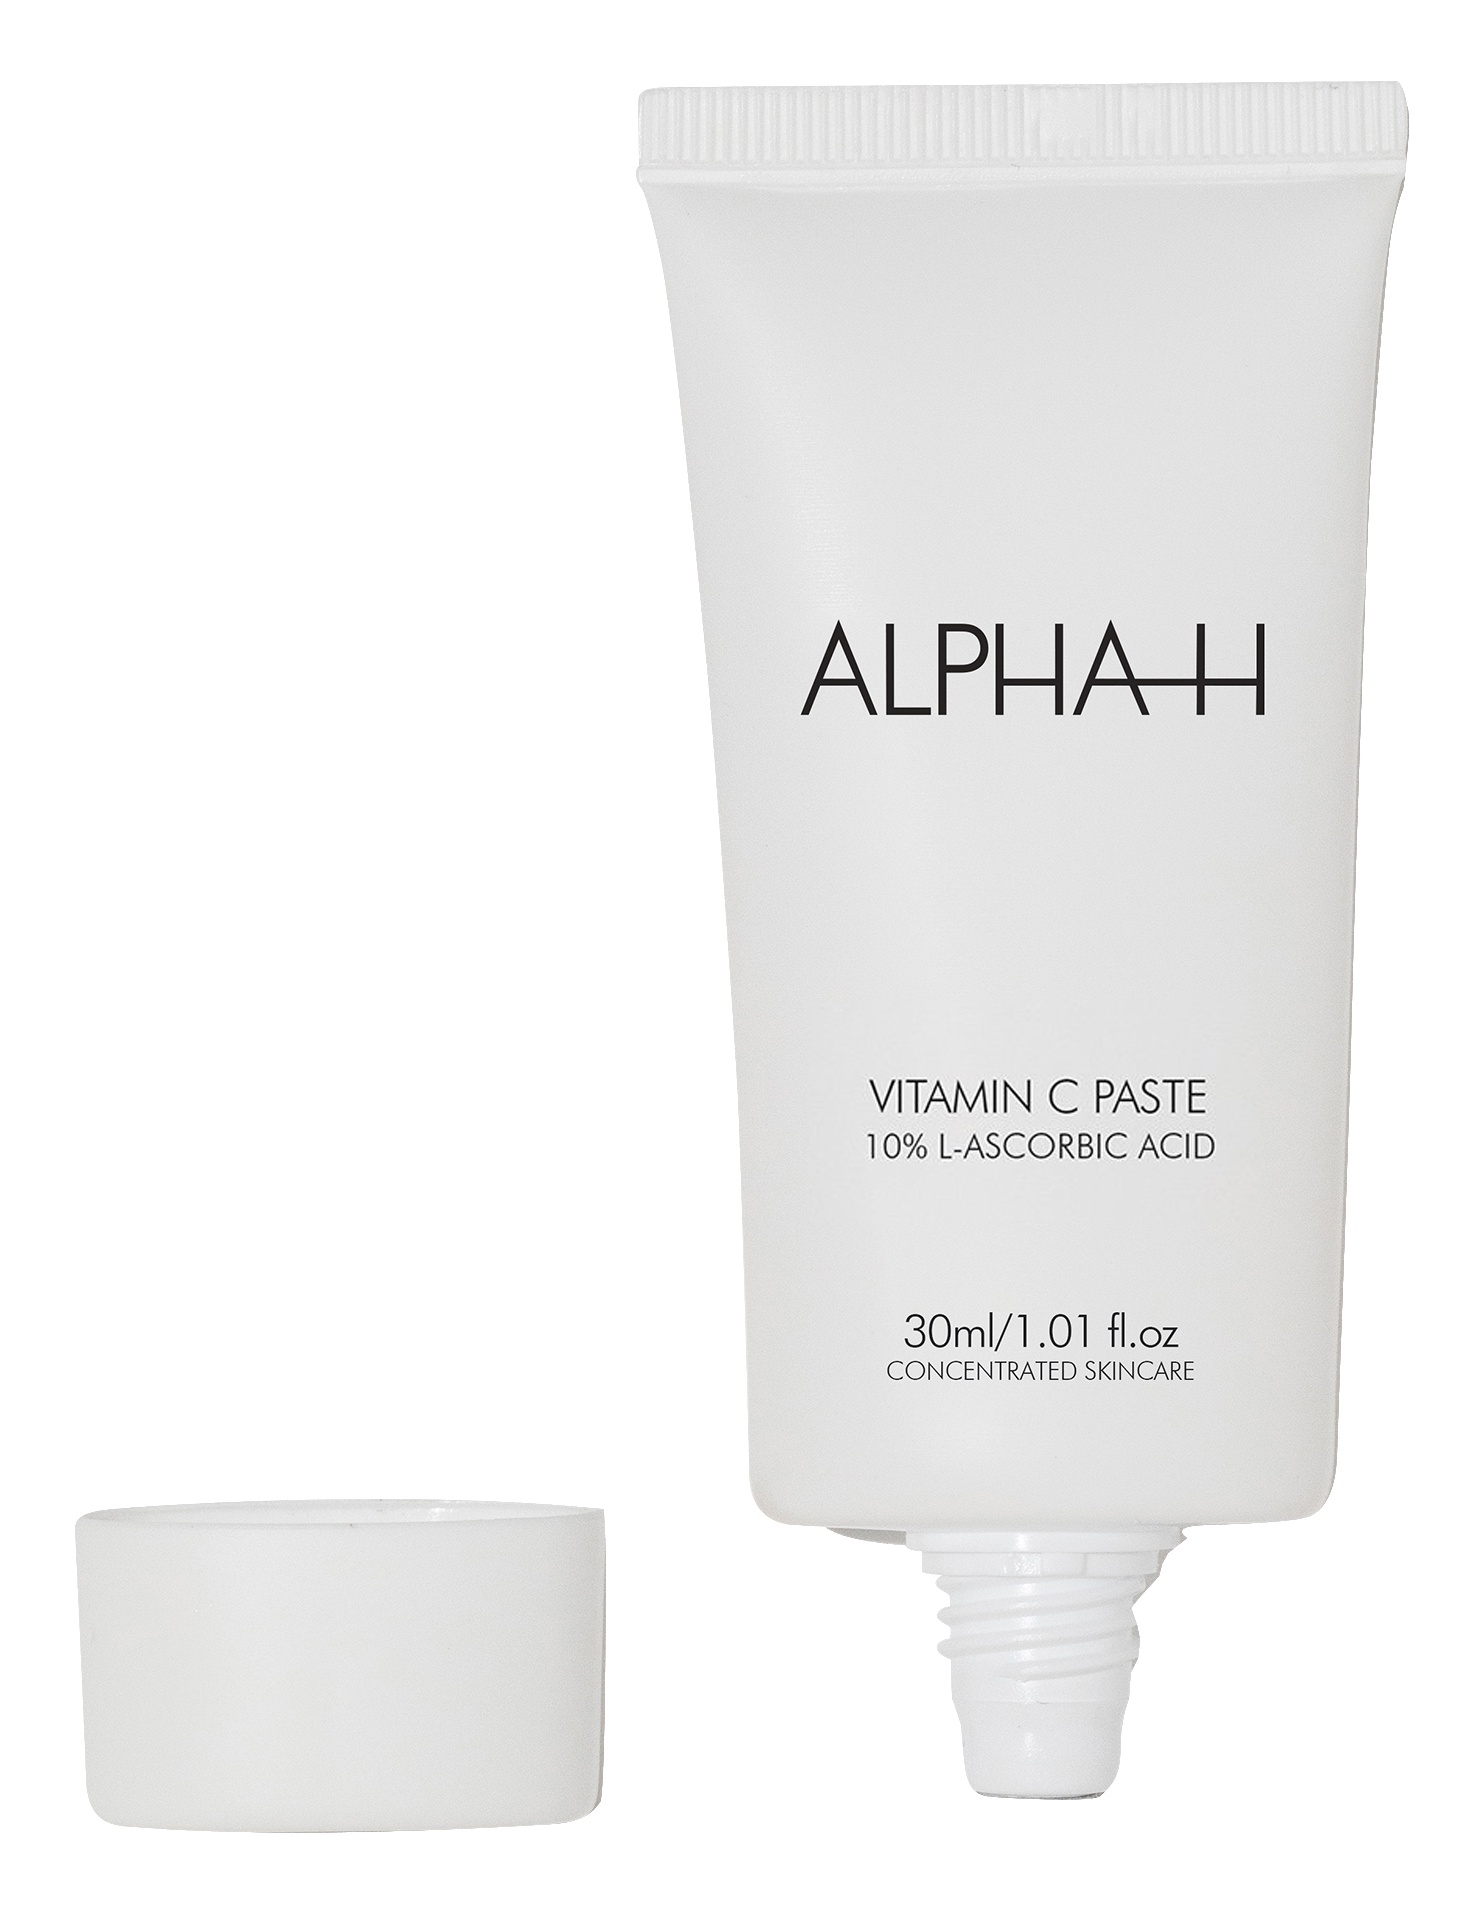 Alpha-H Vitamin C Paste
With 10% L-Ascorbic Acid